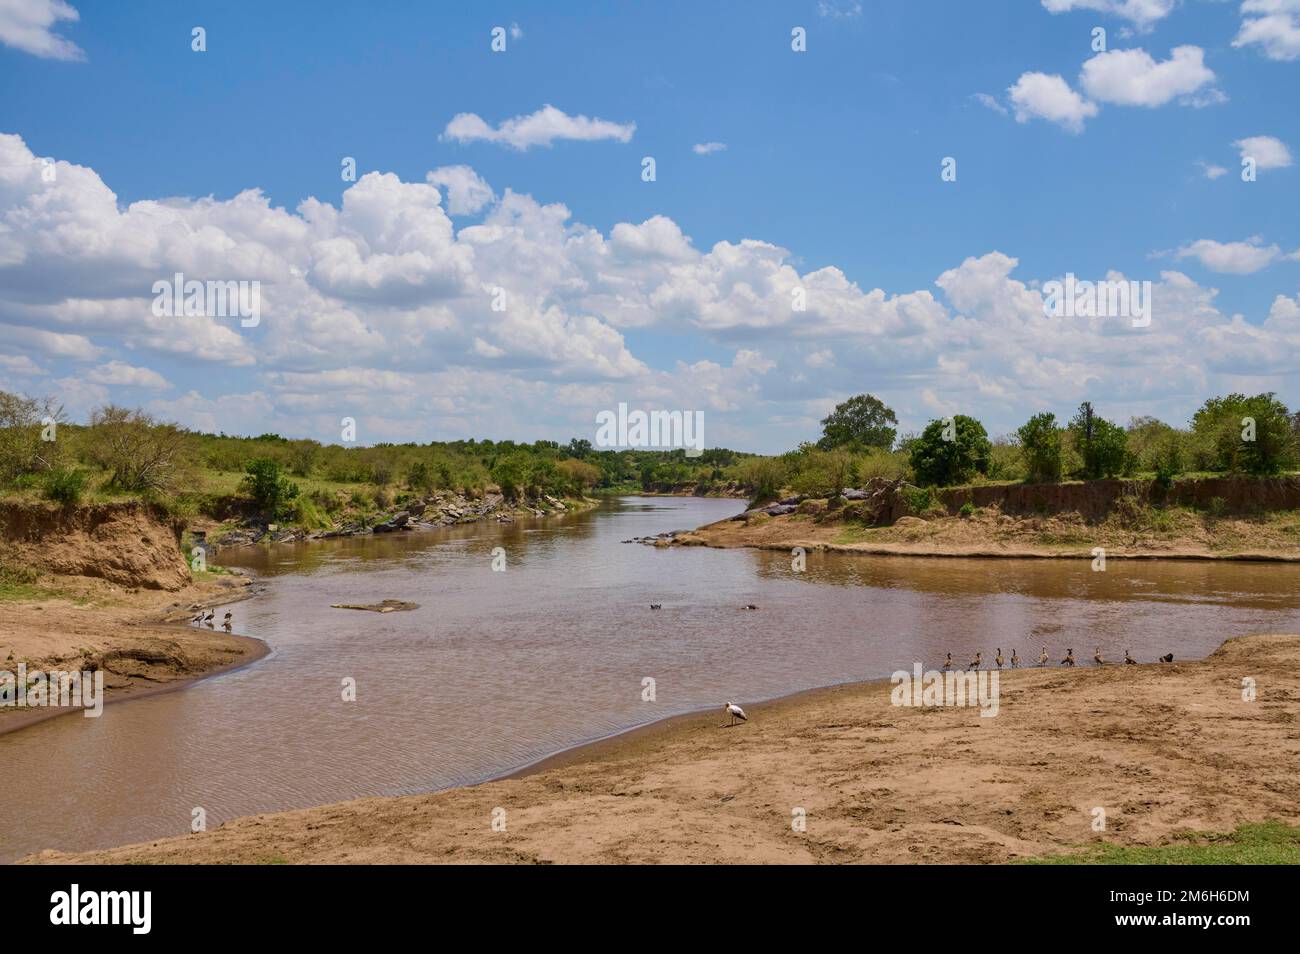 Savannah landscape with river, Mara River, Maasai Mara National Reserve, Kenya Stock Photo